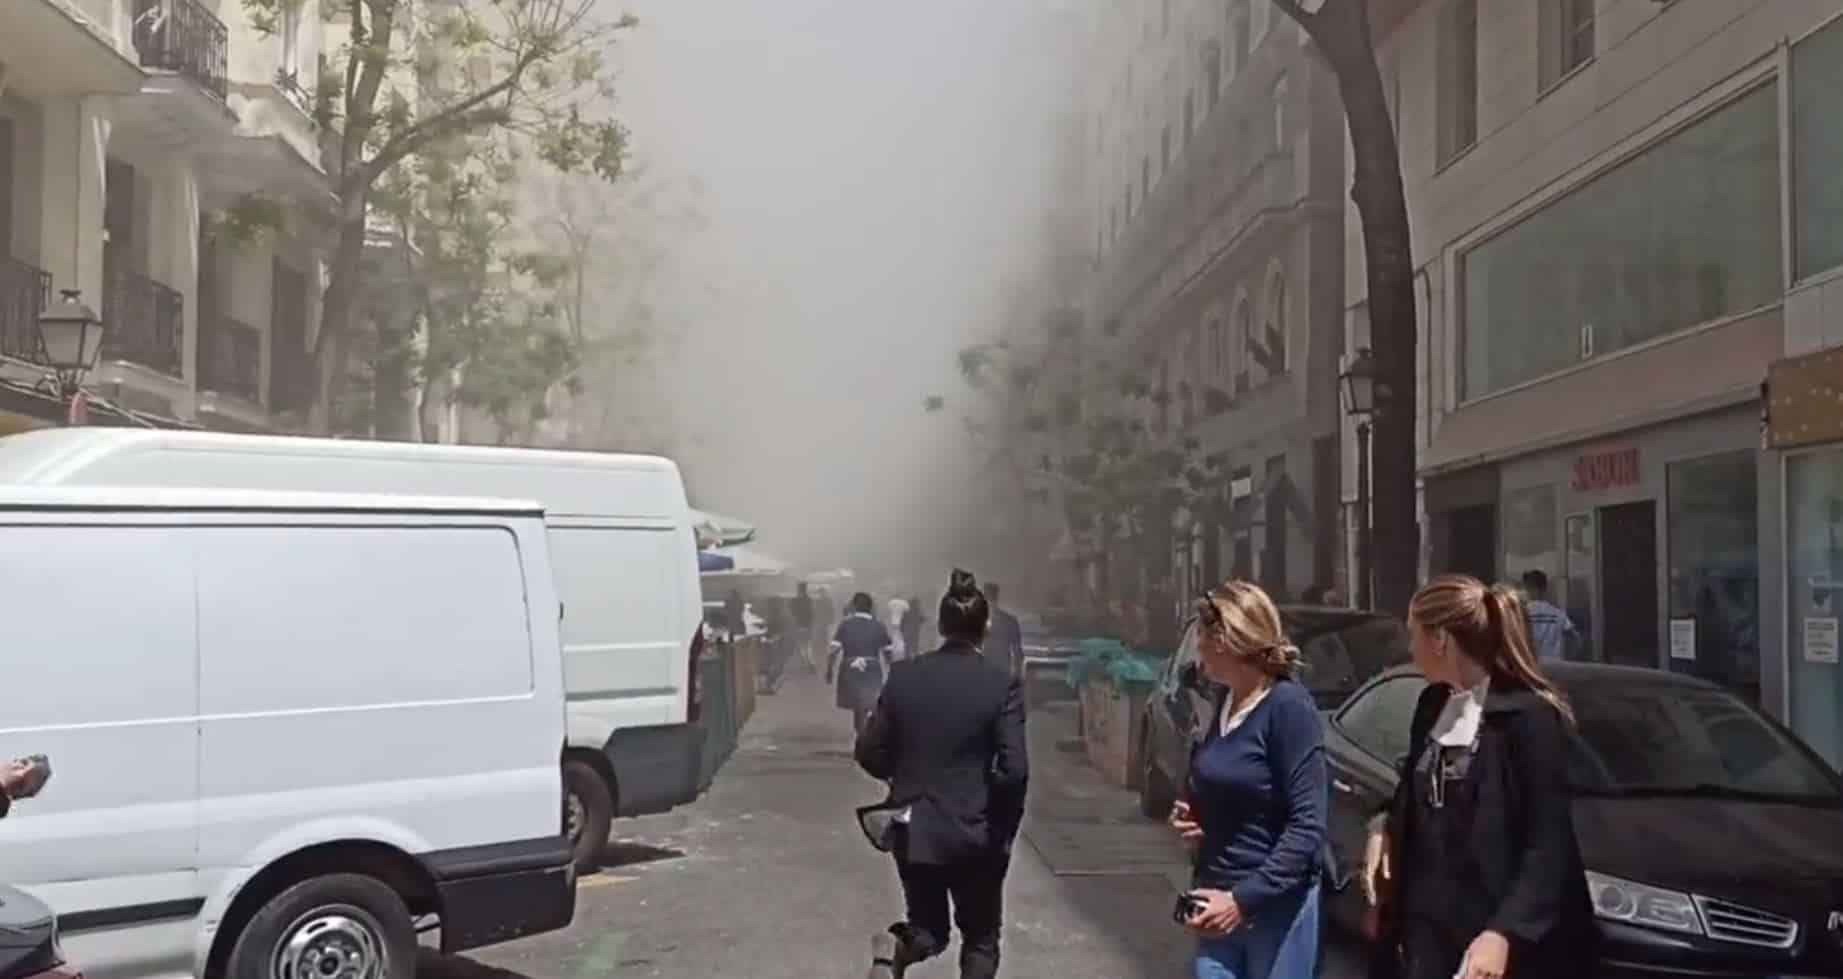 Dos desaparecidos y al menos cuatro hospitalizados tras la fuerte explosión en un edificio de Madrid